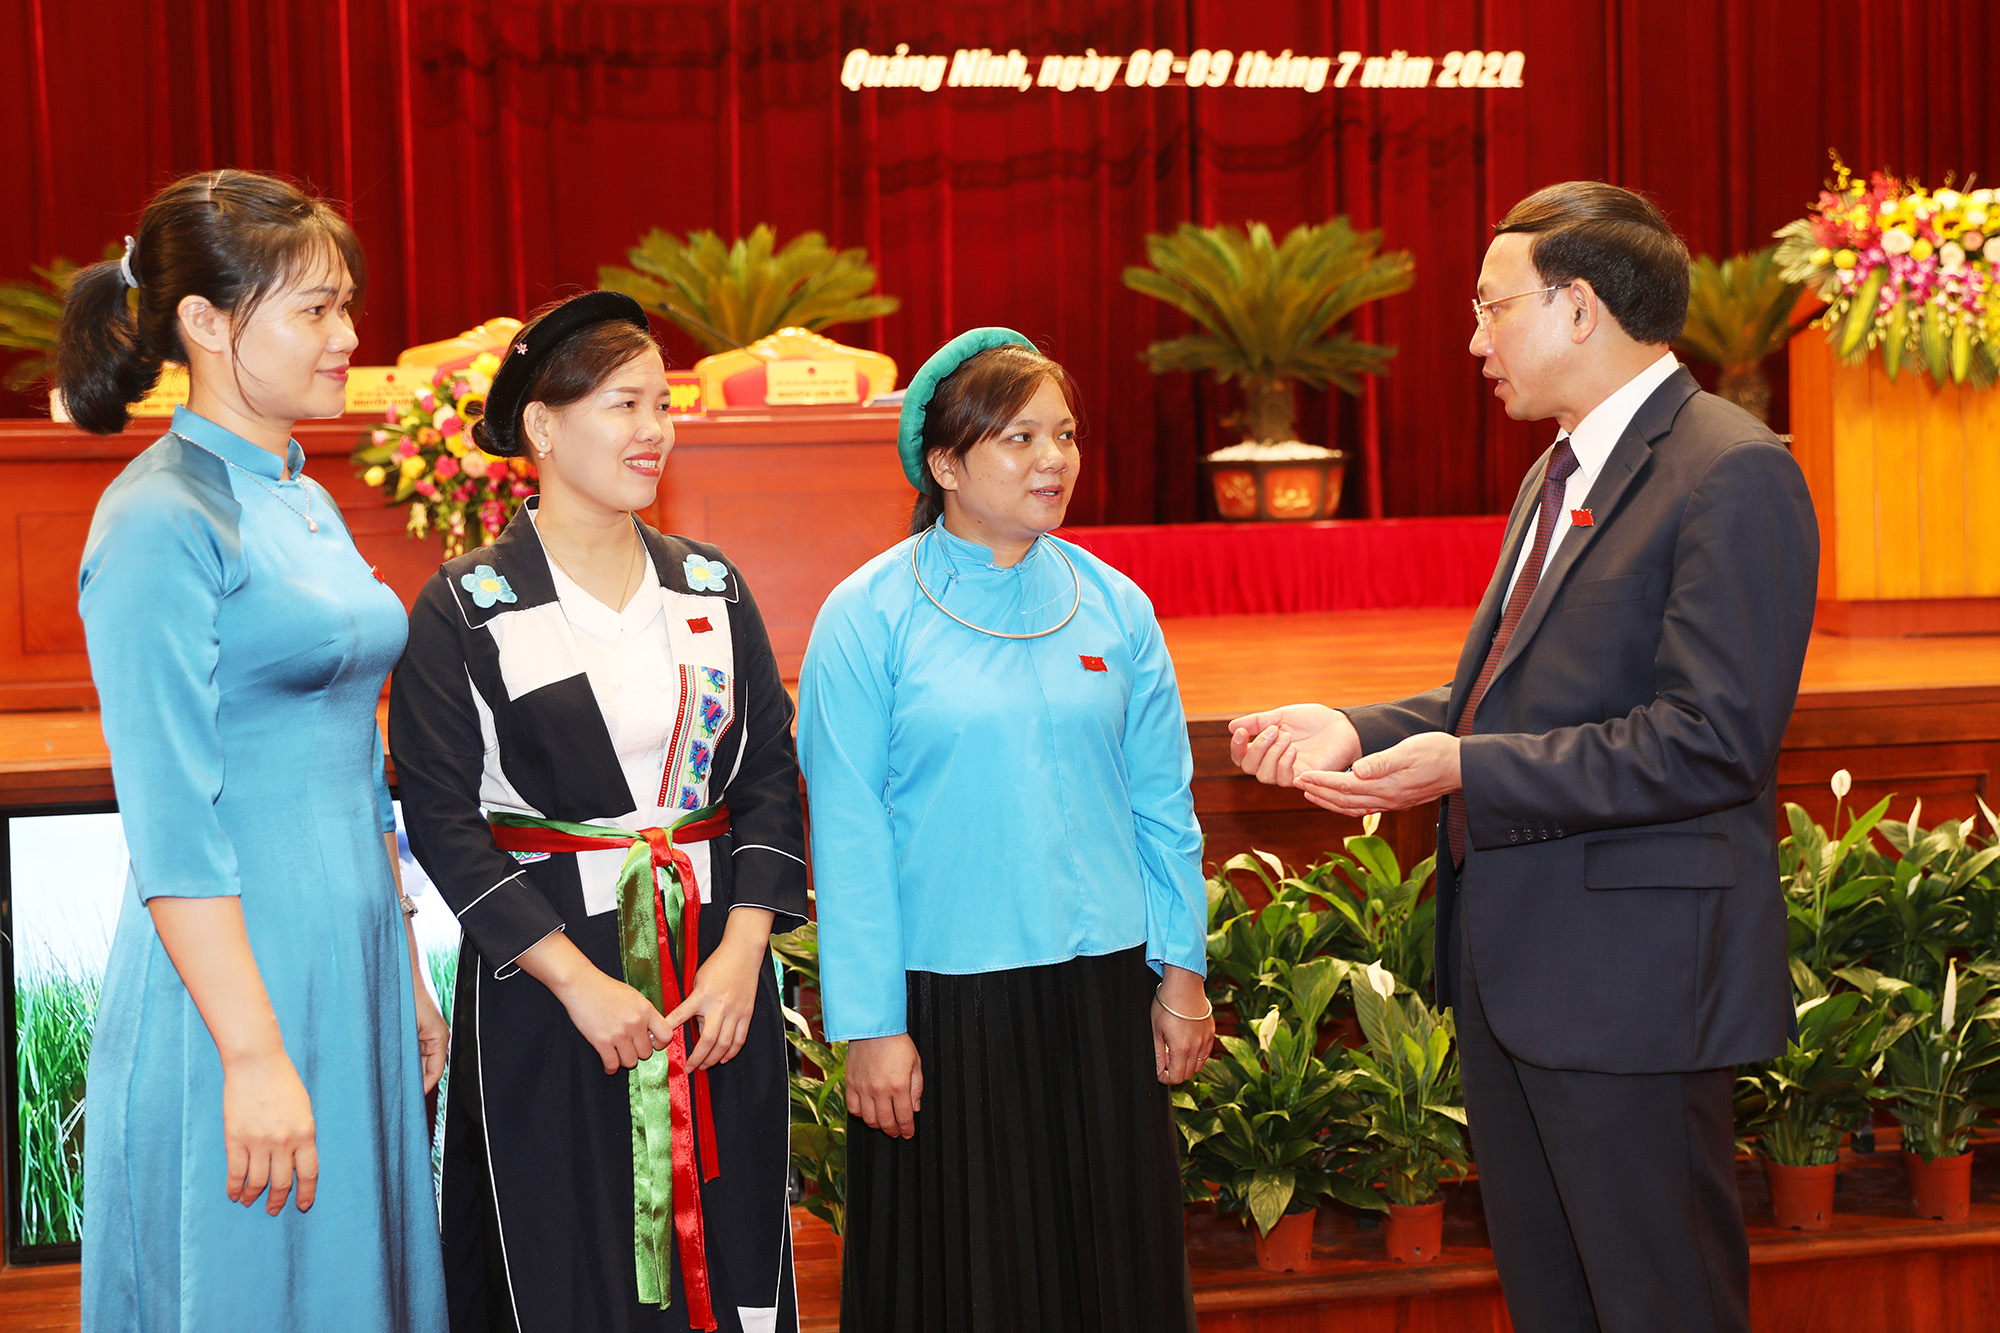 Đồng chí Bí thư Tỉnh ủy, Chủ tịch HĐND tỉnh Nguyễn Xuân Ký trò chuyện với đại biểu HĐND tỉnh bên lề kỳ họp.